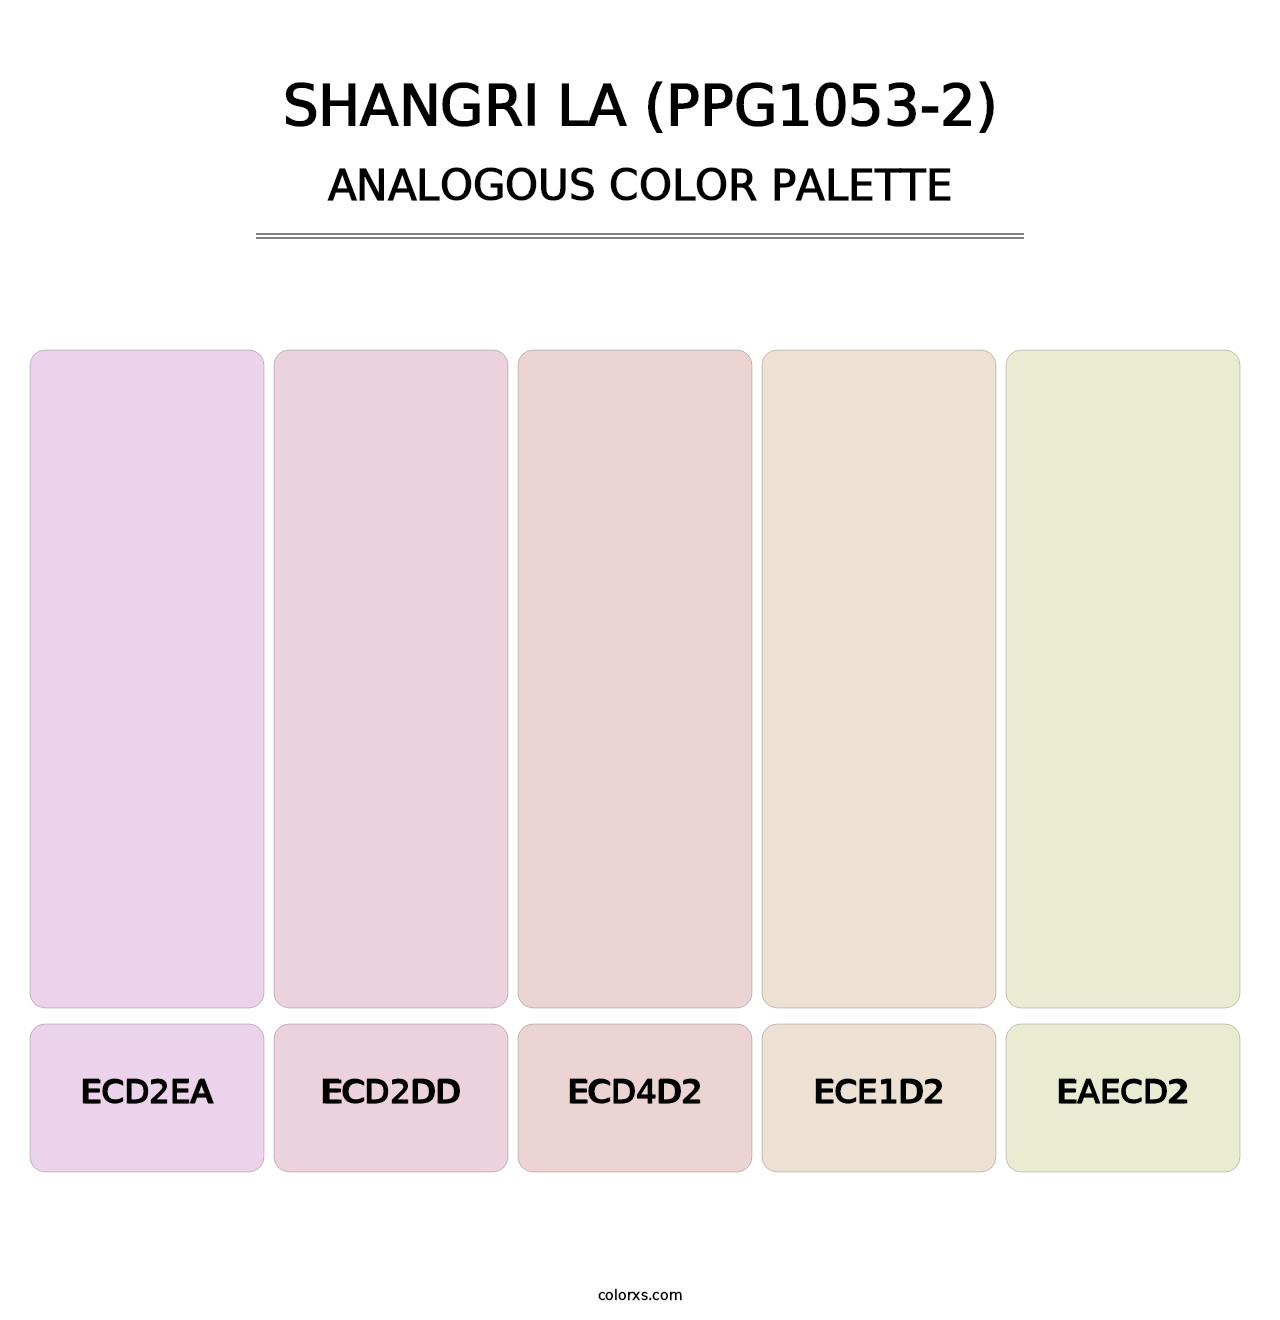 Shangri La (PPG1053-2) - Analogous Color Palette